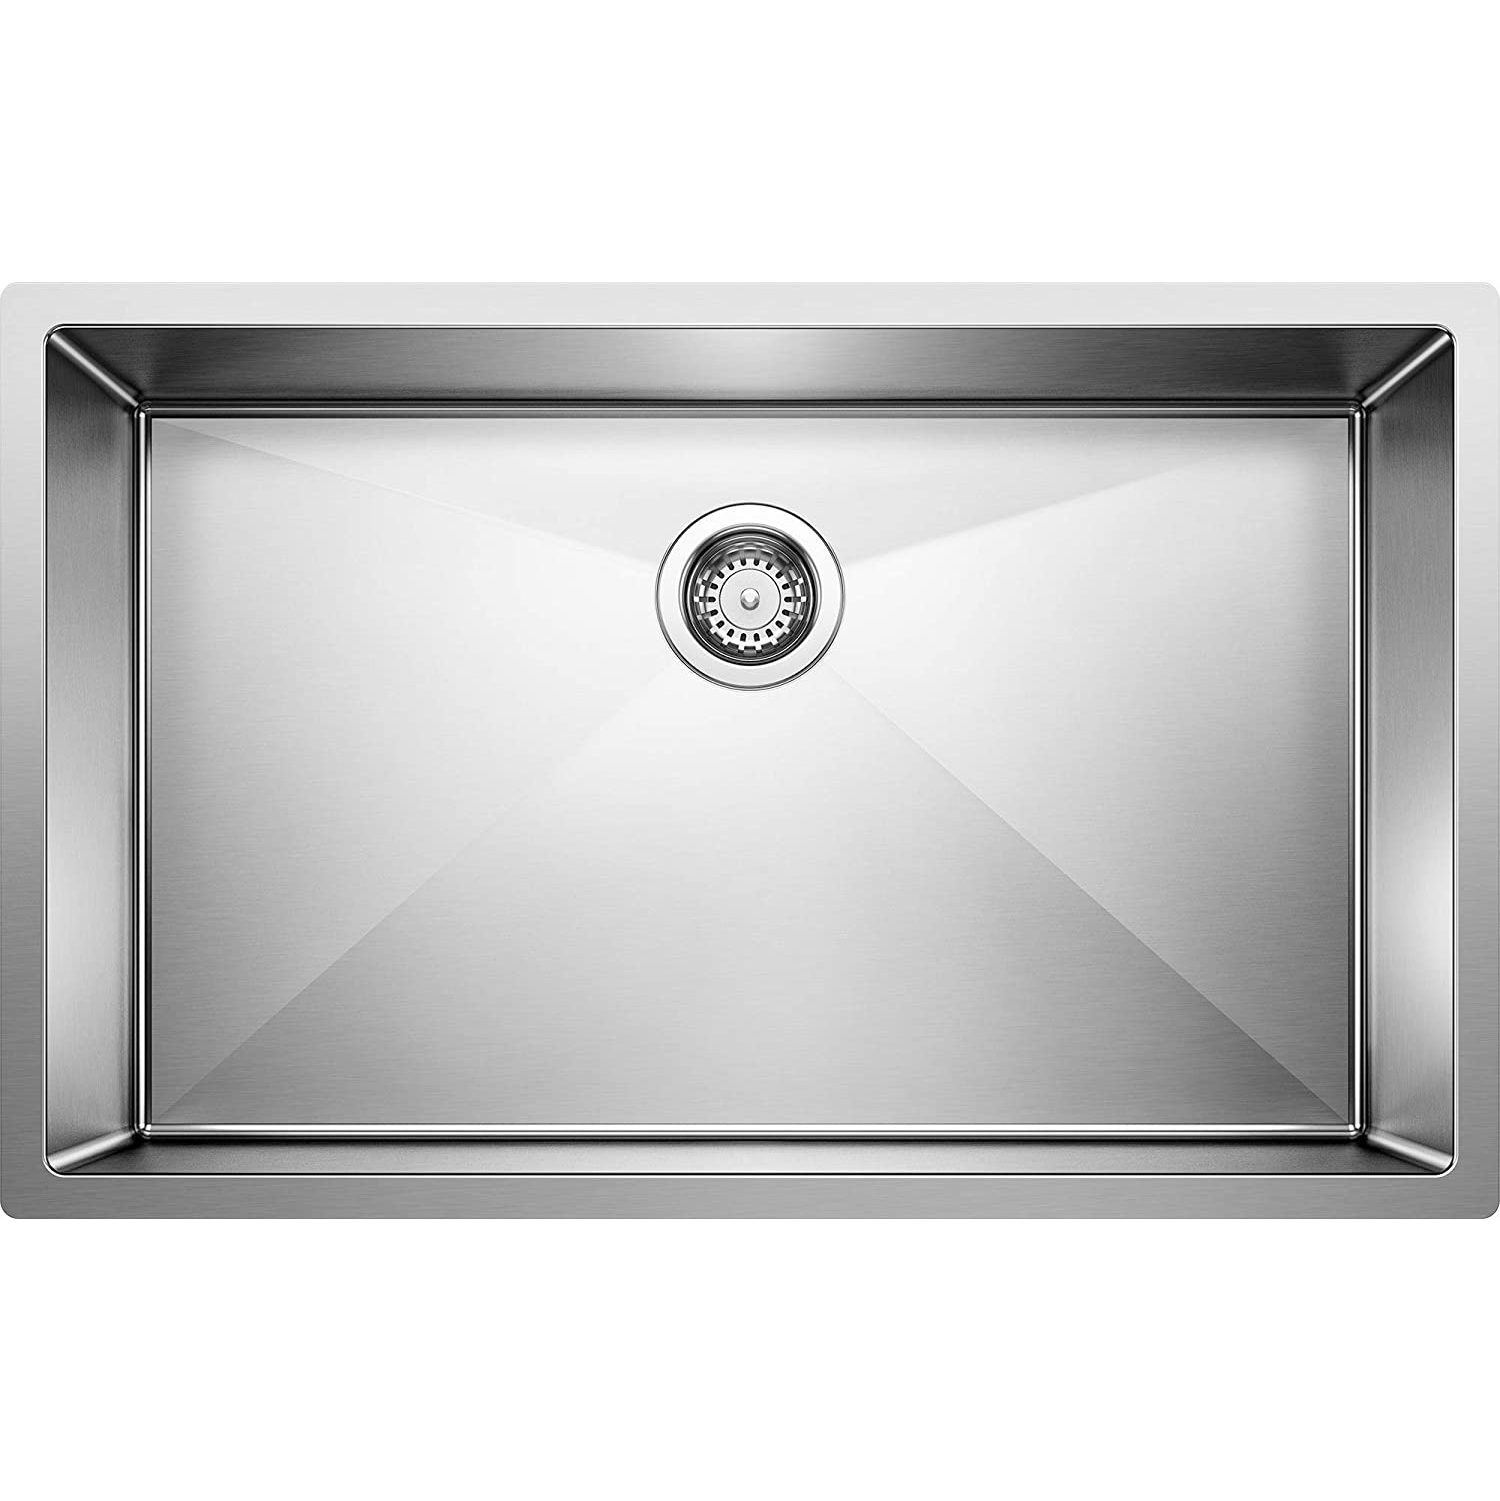 Precision R10 32x20x10" SS Super Single Bowl Kitchen Sink